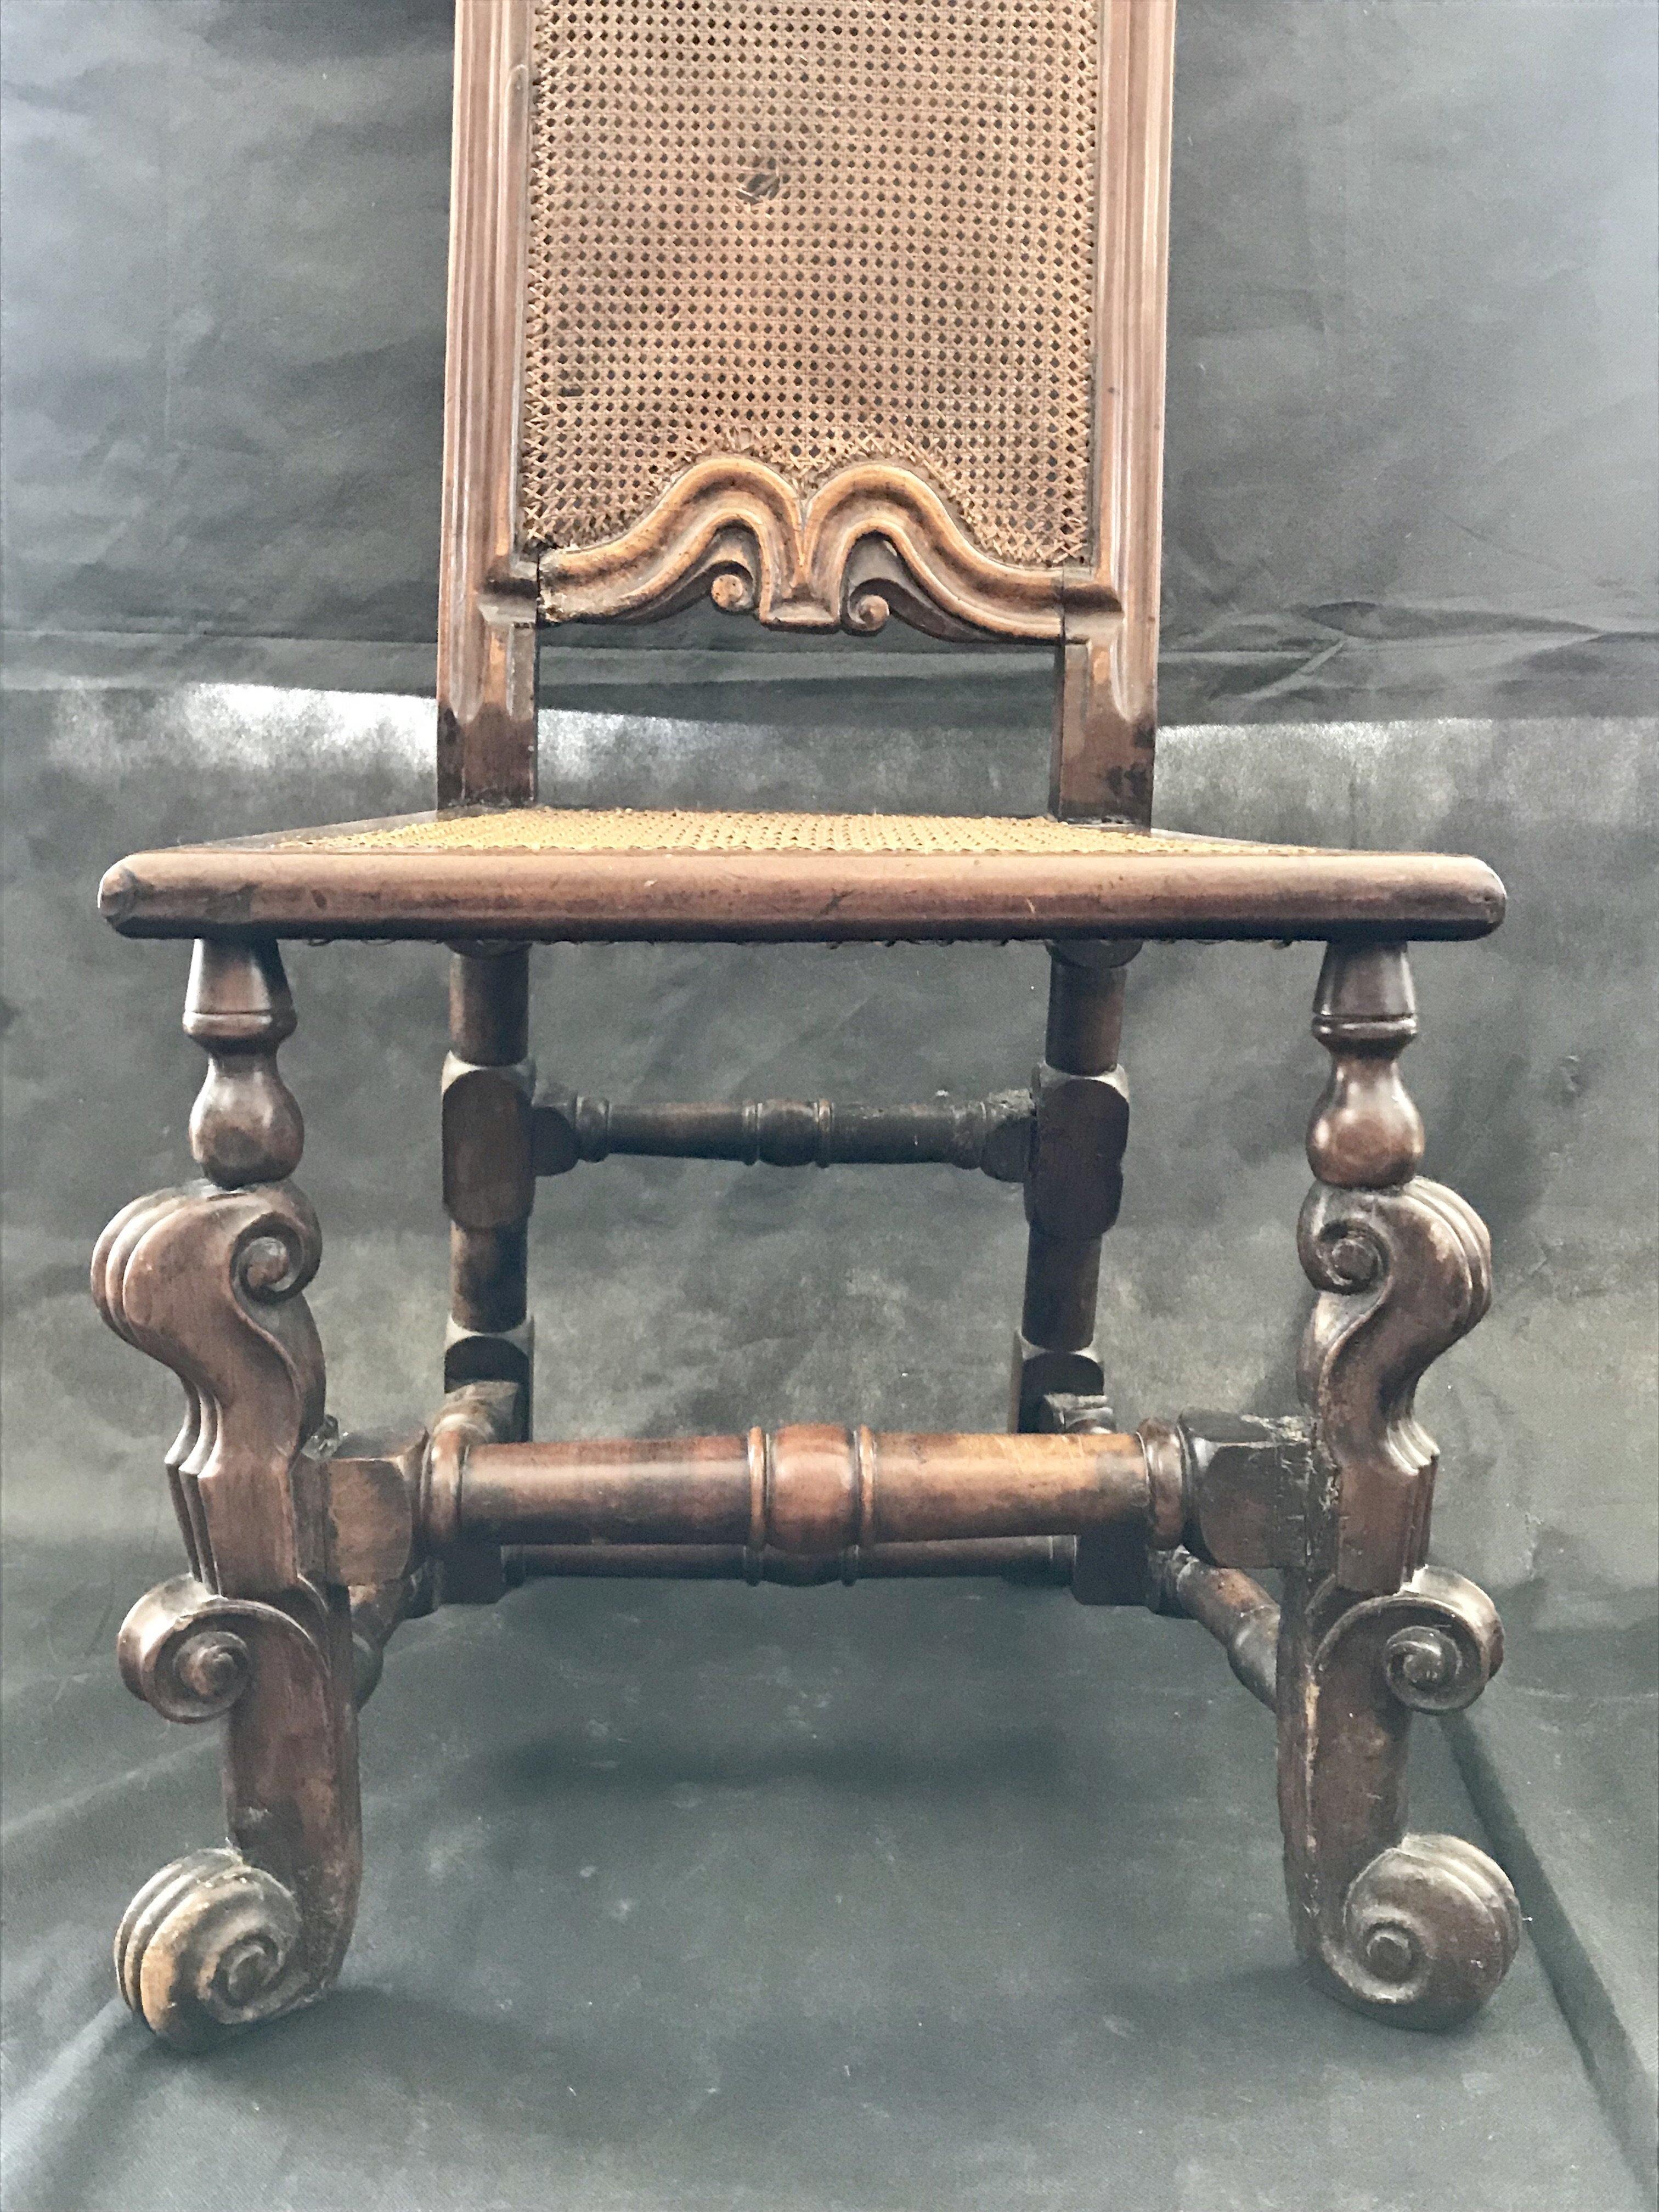 Magnifique chaise italienne très ancienne à haut dossier canné. Acheté dans le sud de la France. La canne a un petit trou à l'arrière mais elle est en très bon état sinon. 
#3231.
   